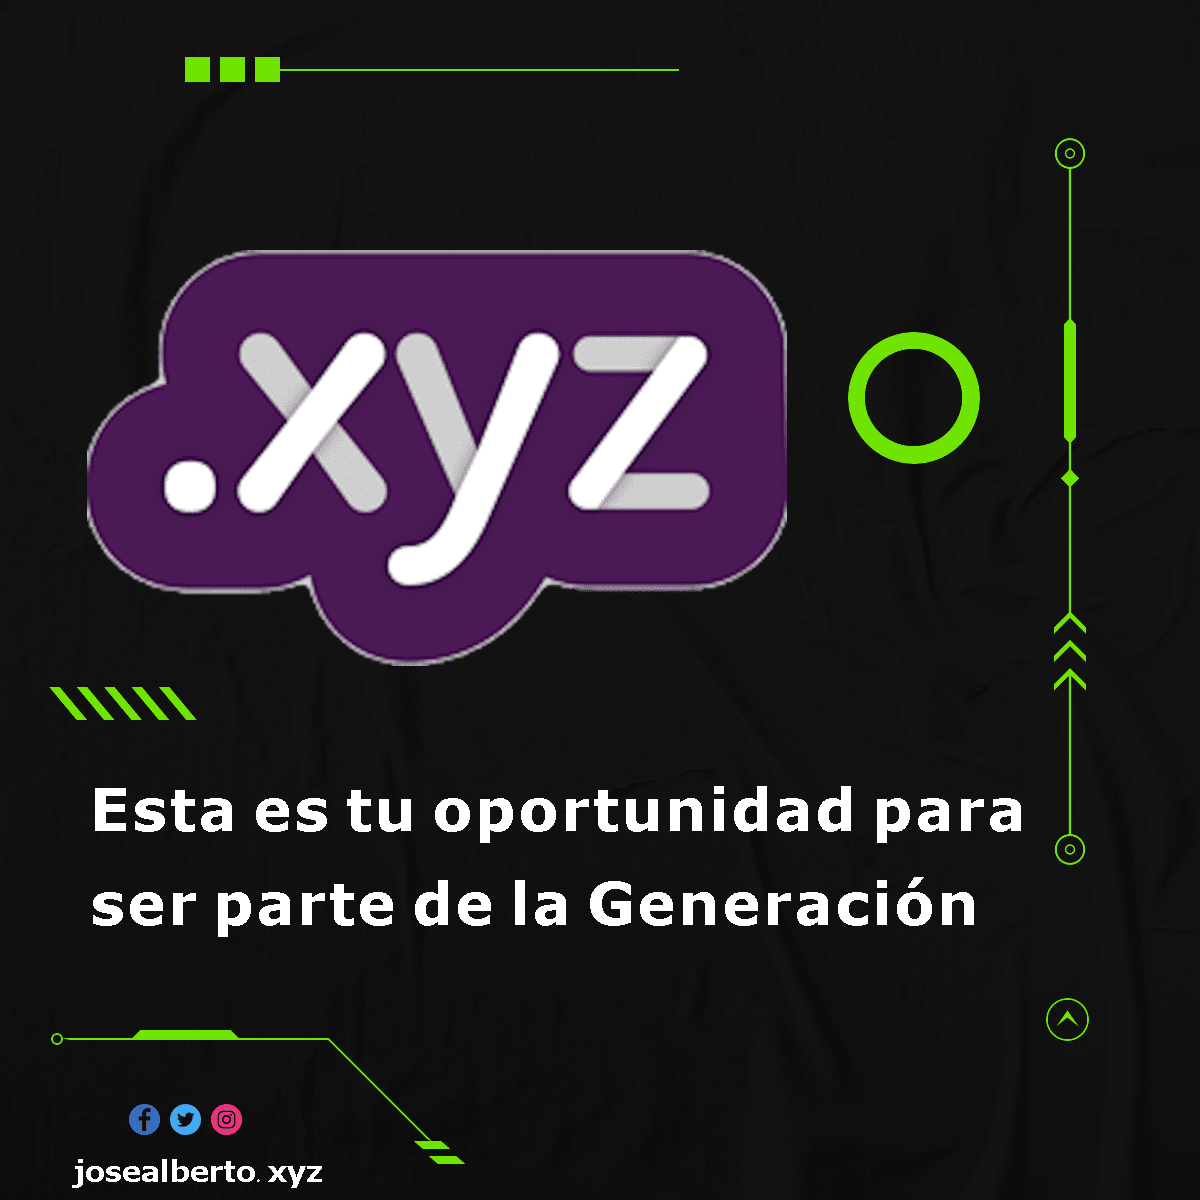 .XYZ representa un negocio, una organización o una comunidad local